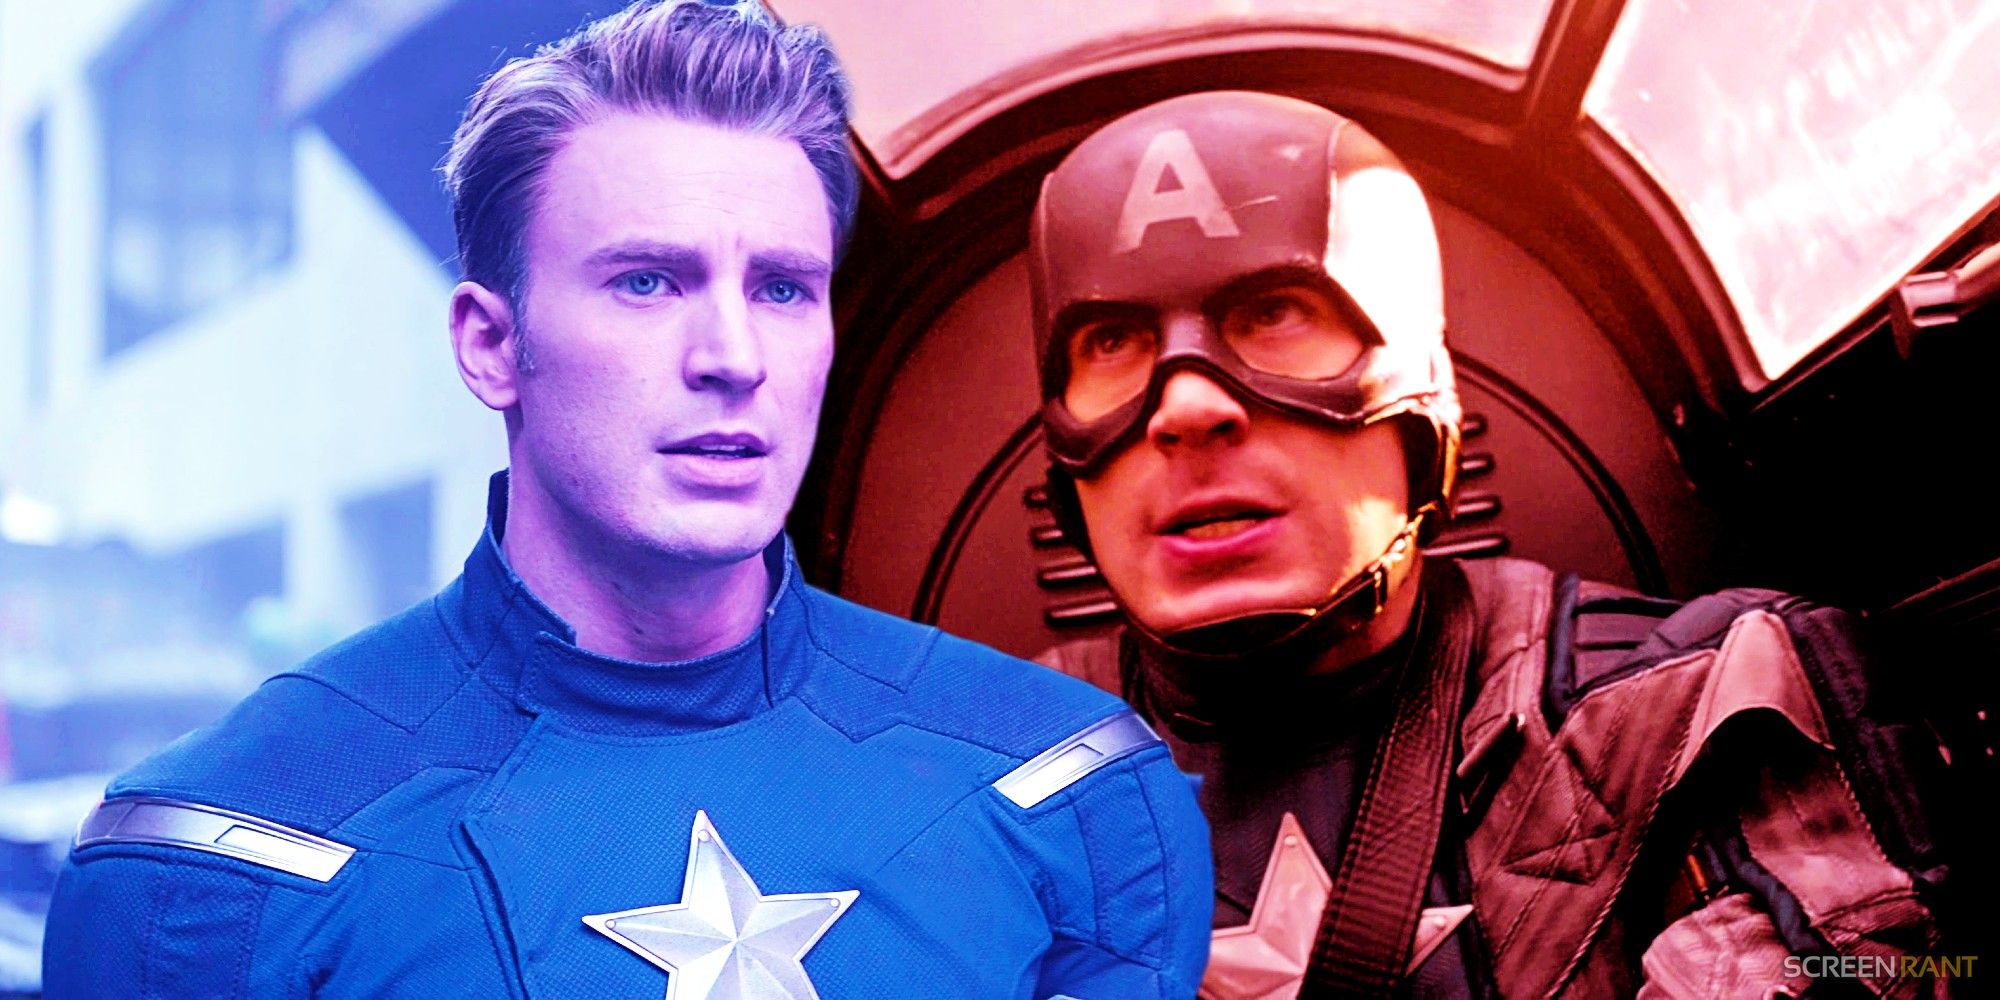 Chris Evans as Captain America in The First Avenger And Avengers Endgame